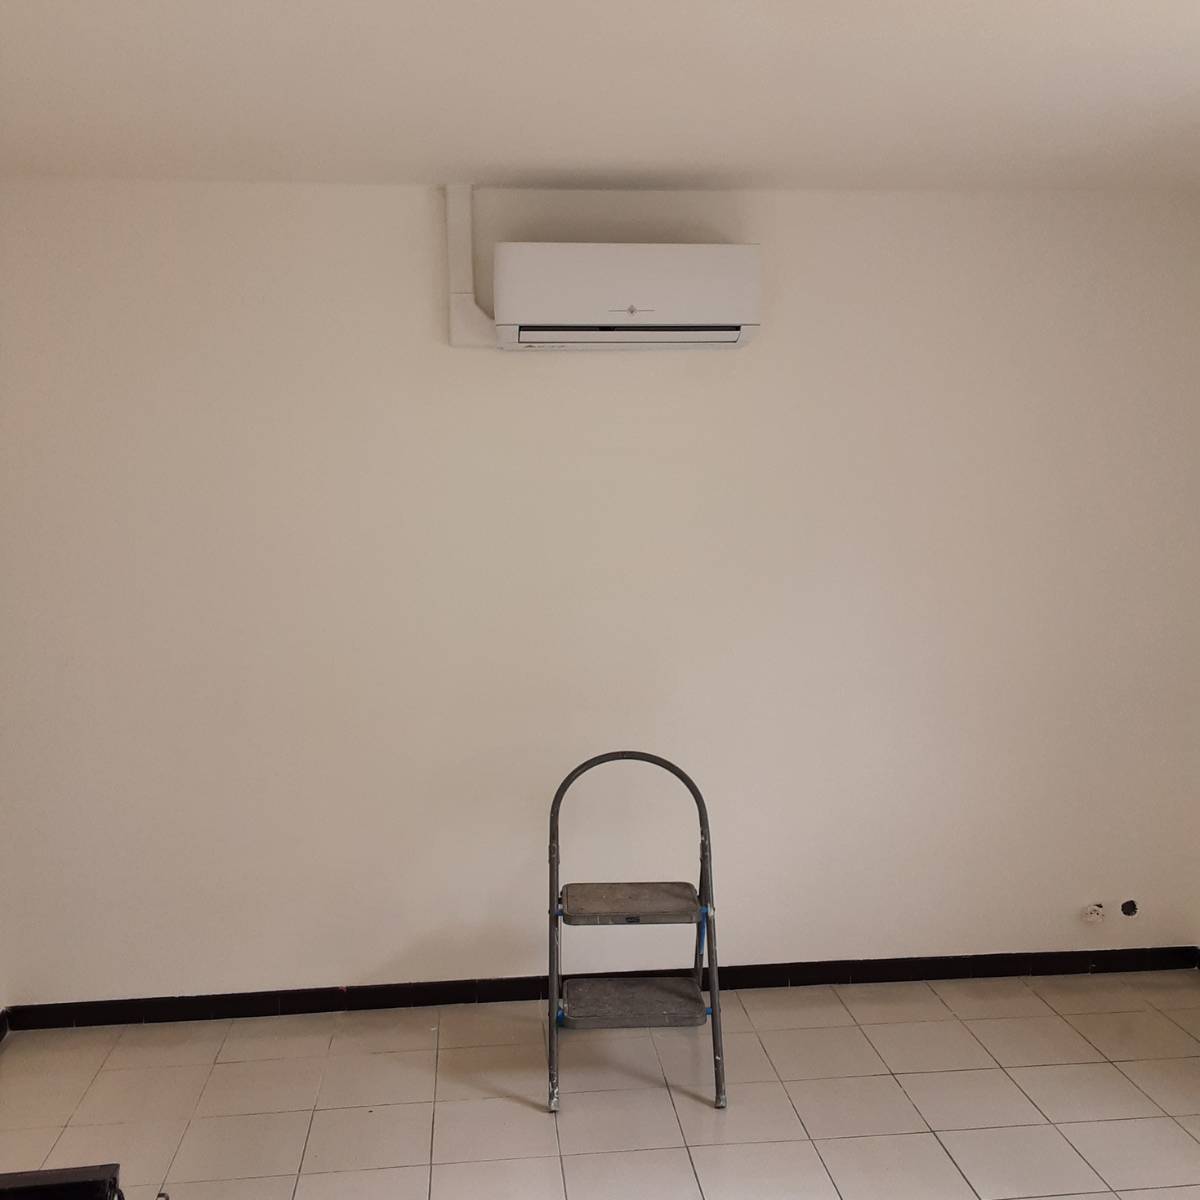 Unité intérieure de la pompe à chaleur air-air installée dans une maison à Liévin, offrant chauffage et climatisation efficaces